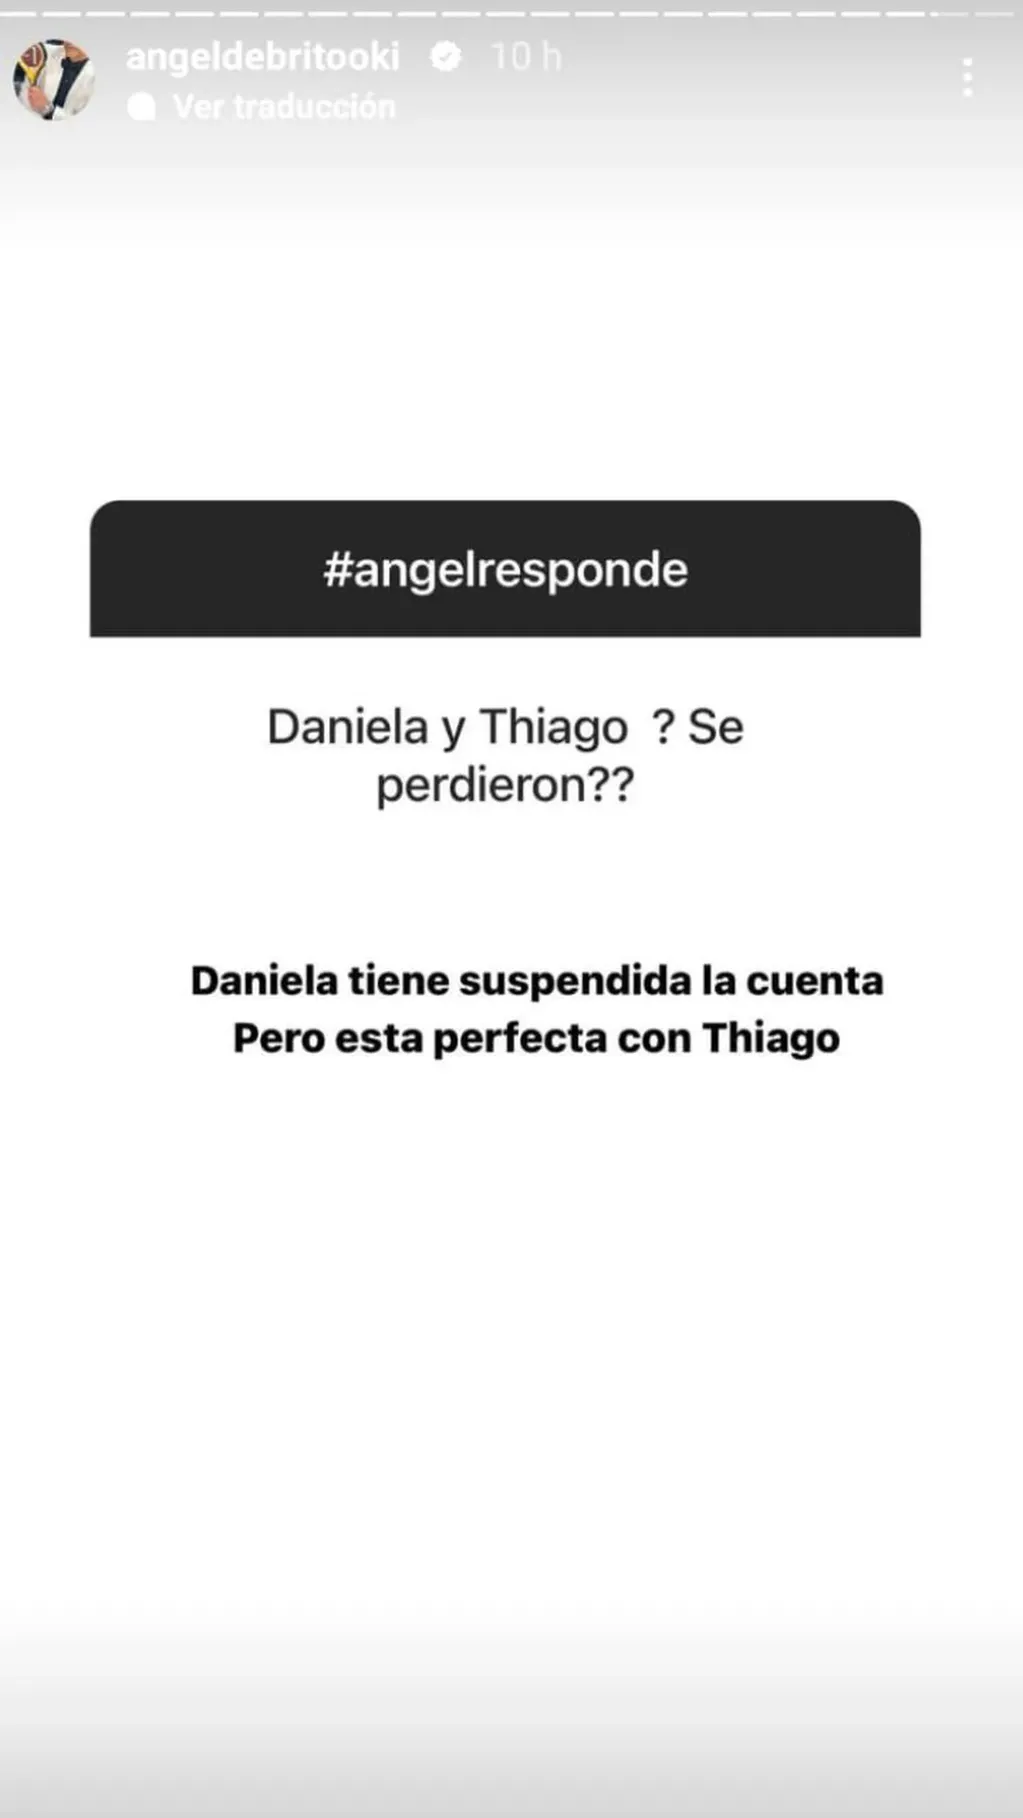 La aclaración de Ángel de Brito sobre Daniela y Thiago